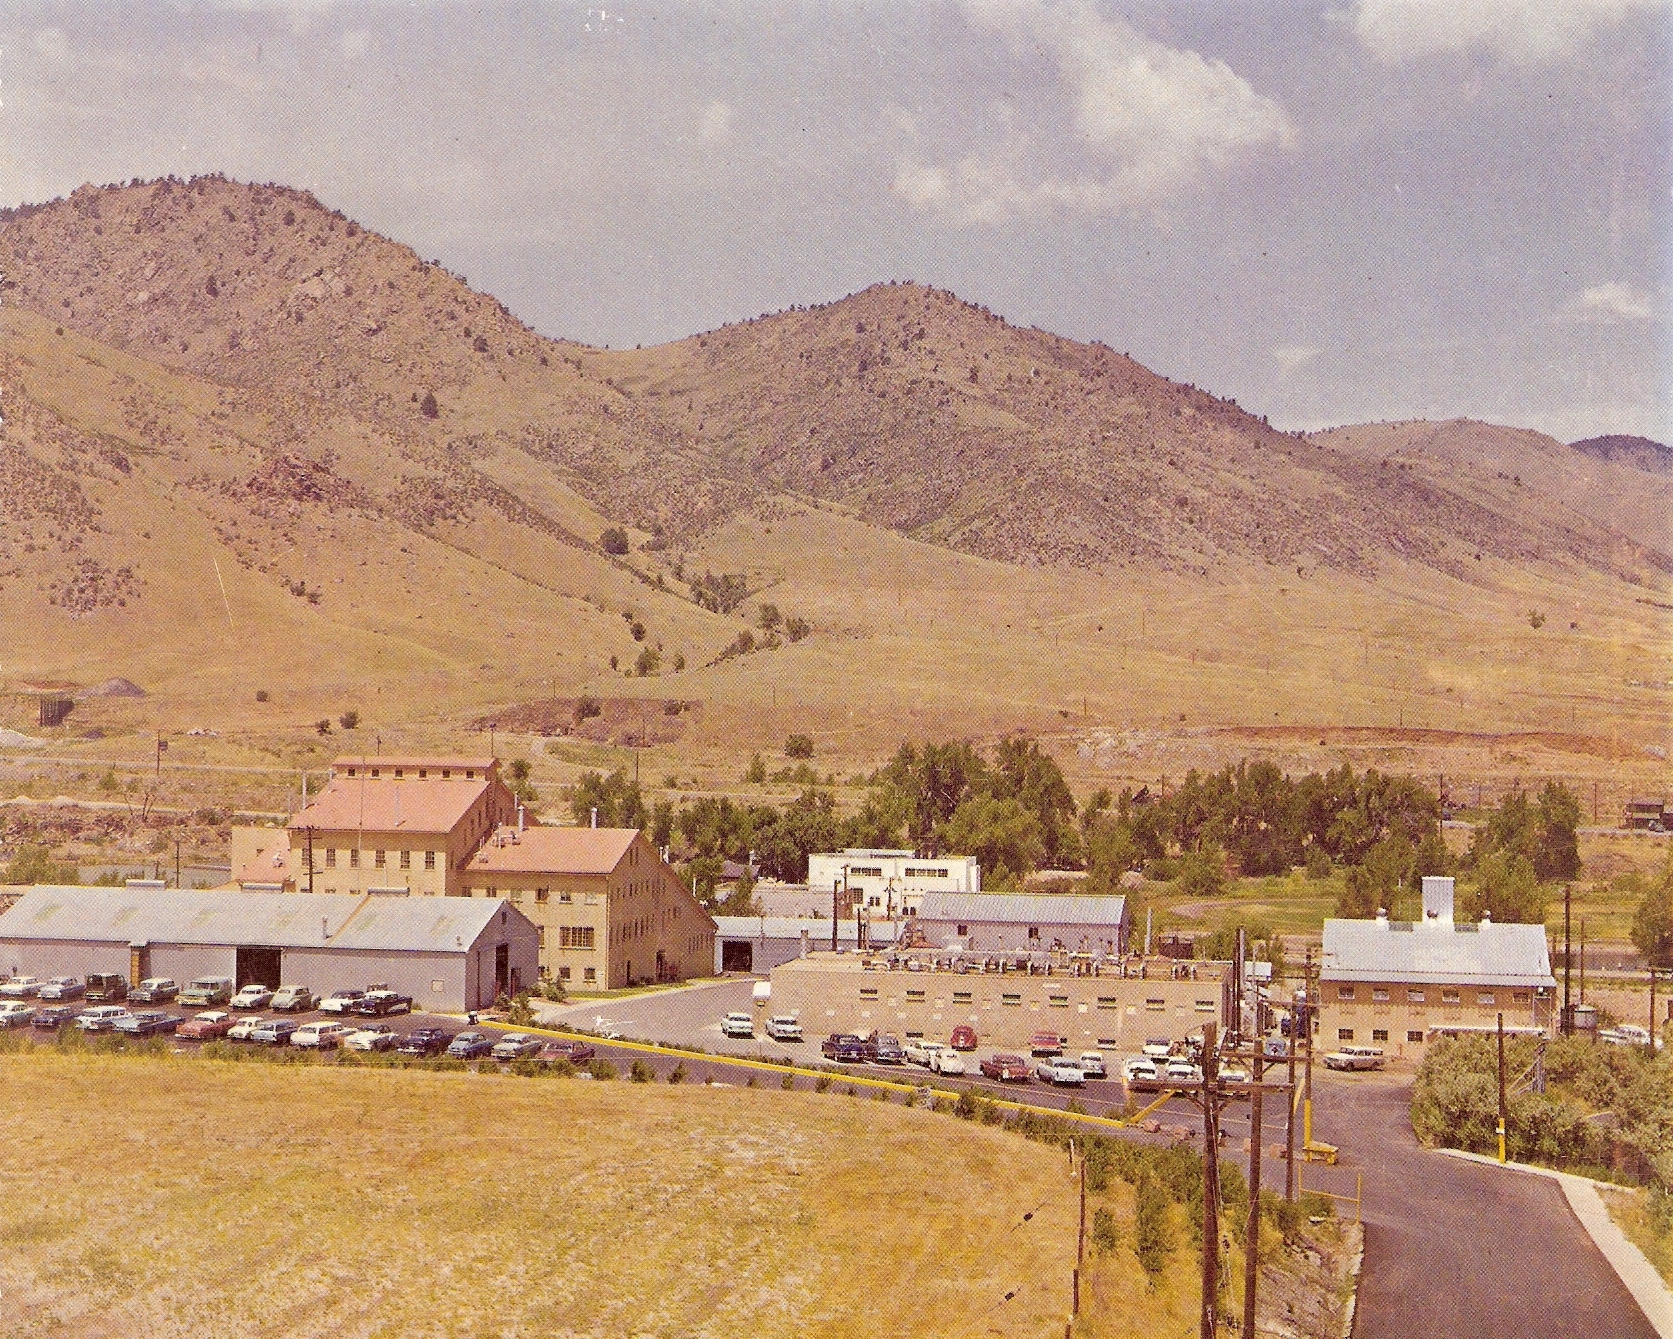 CSMRI Campus ~1968